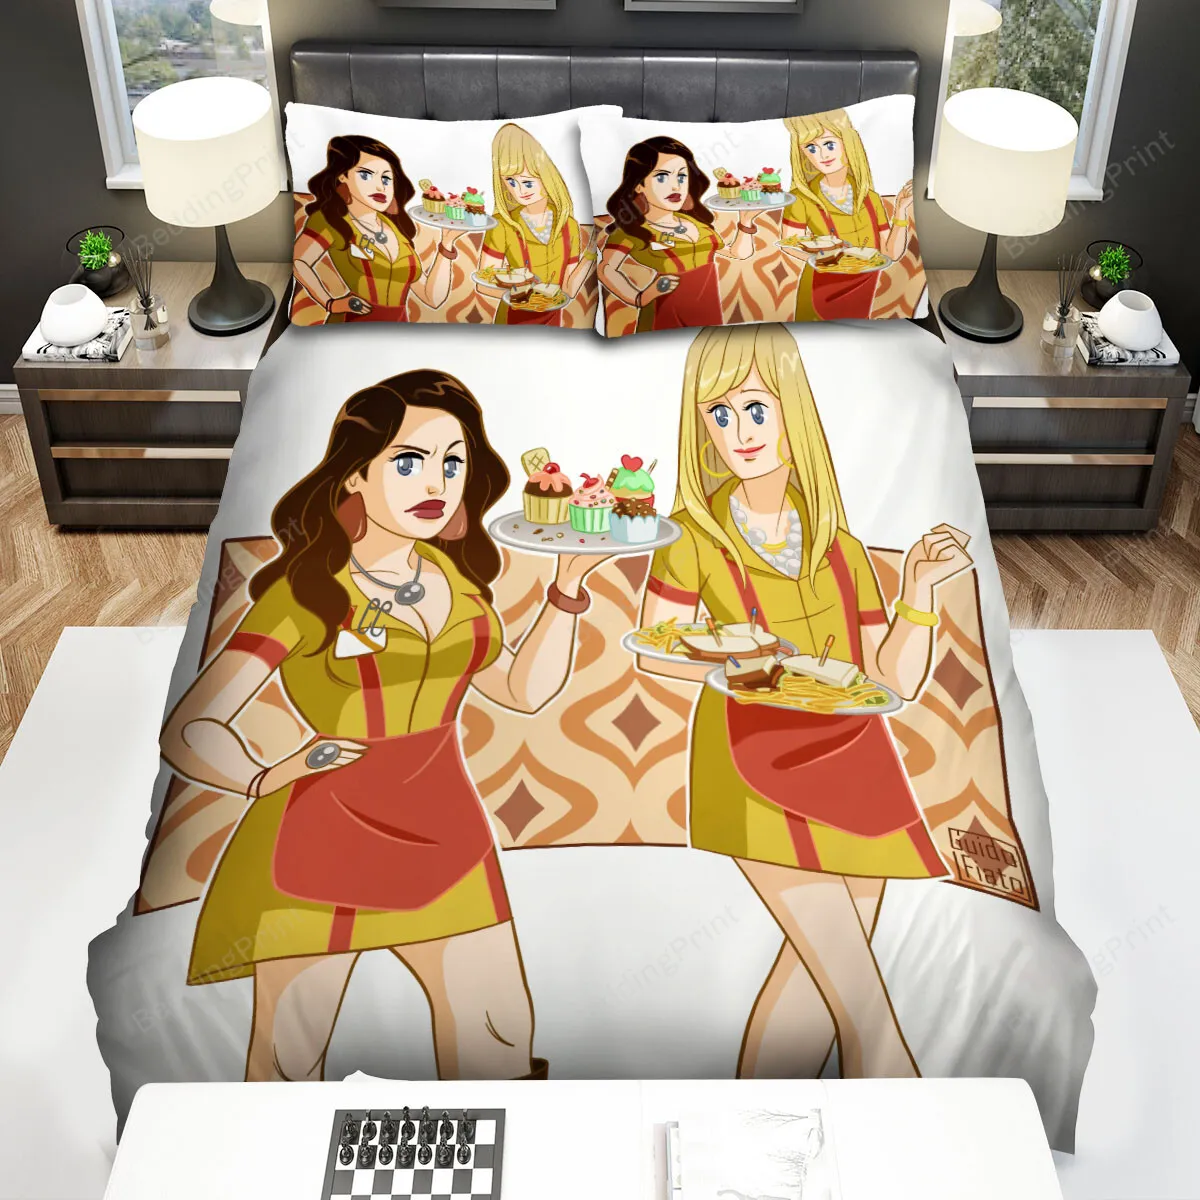 2 Broke Girls (20112017) Movie Illustration 3 Bed Sheets Spread Comforter Duvet Cover Bedding Sets